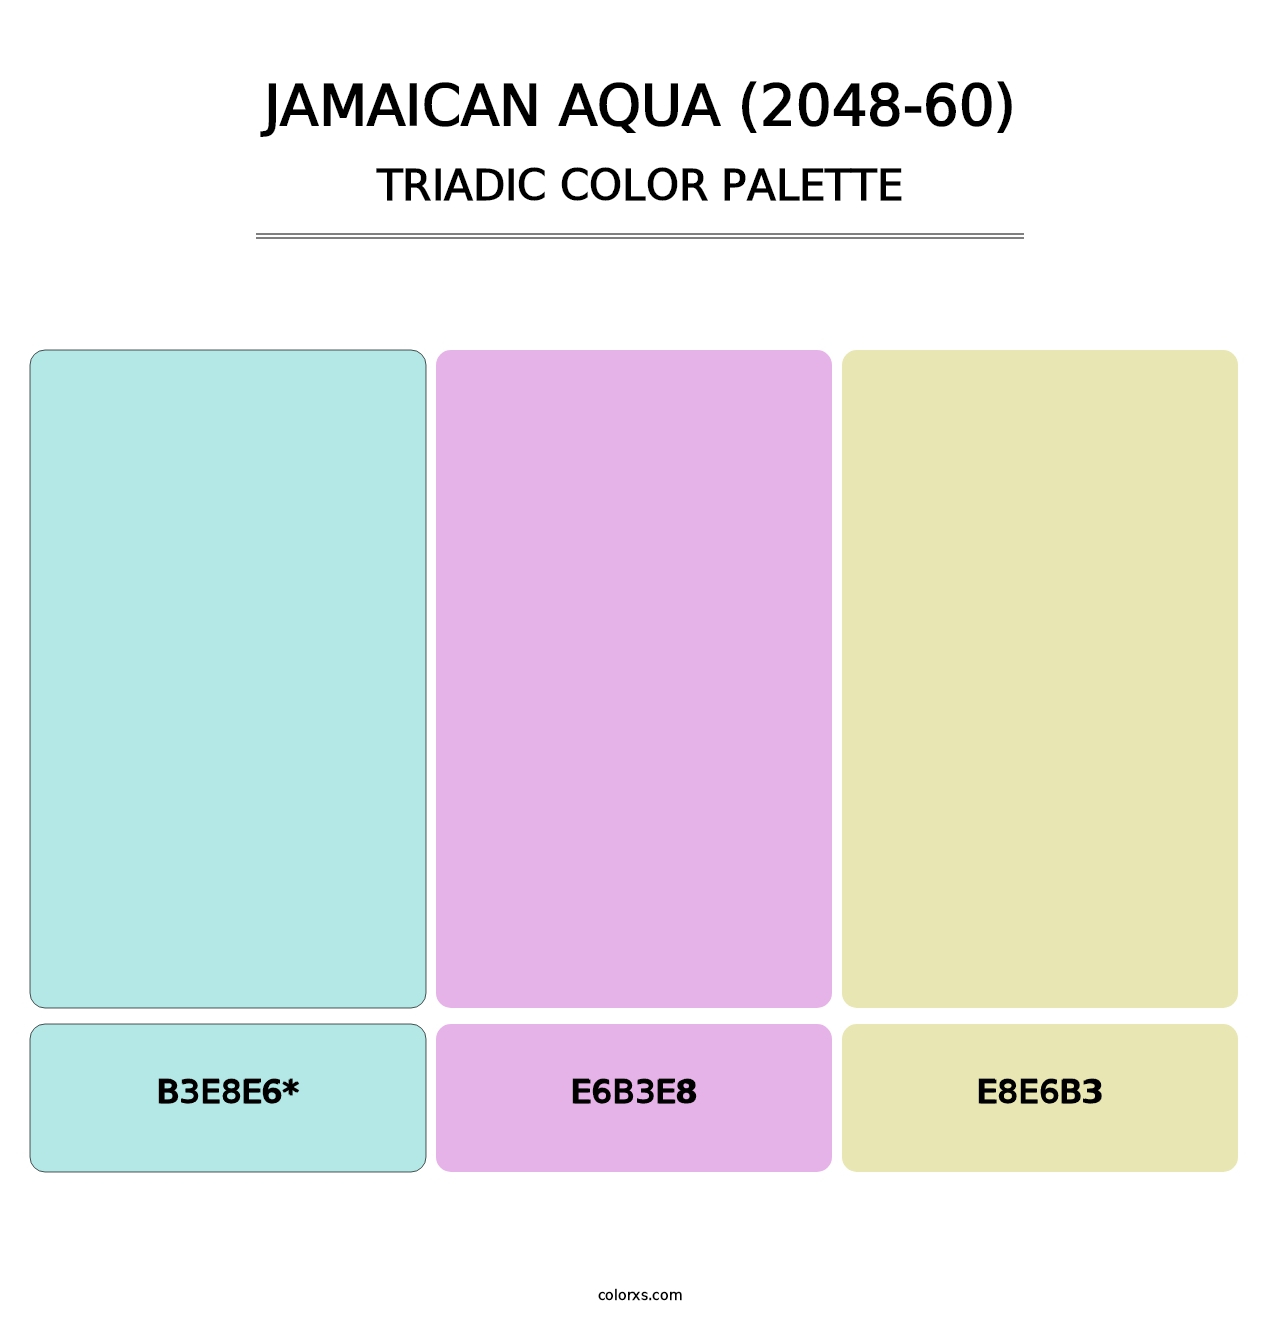 Jamaican Aqua (2048-60) - Triadic Color Palette